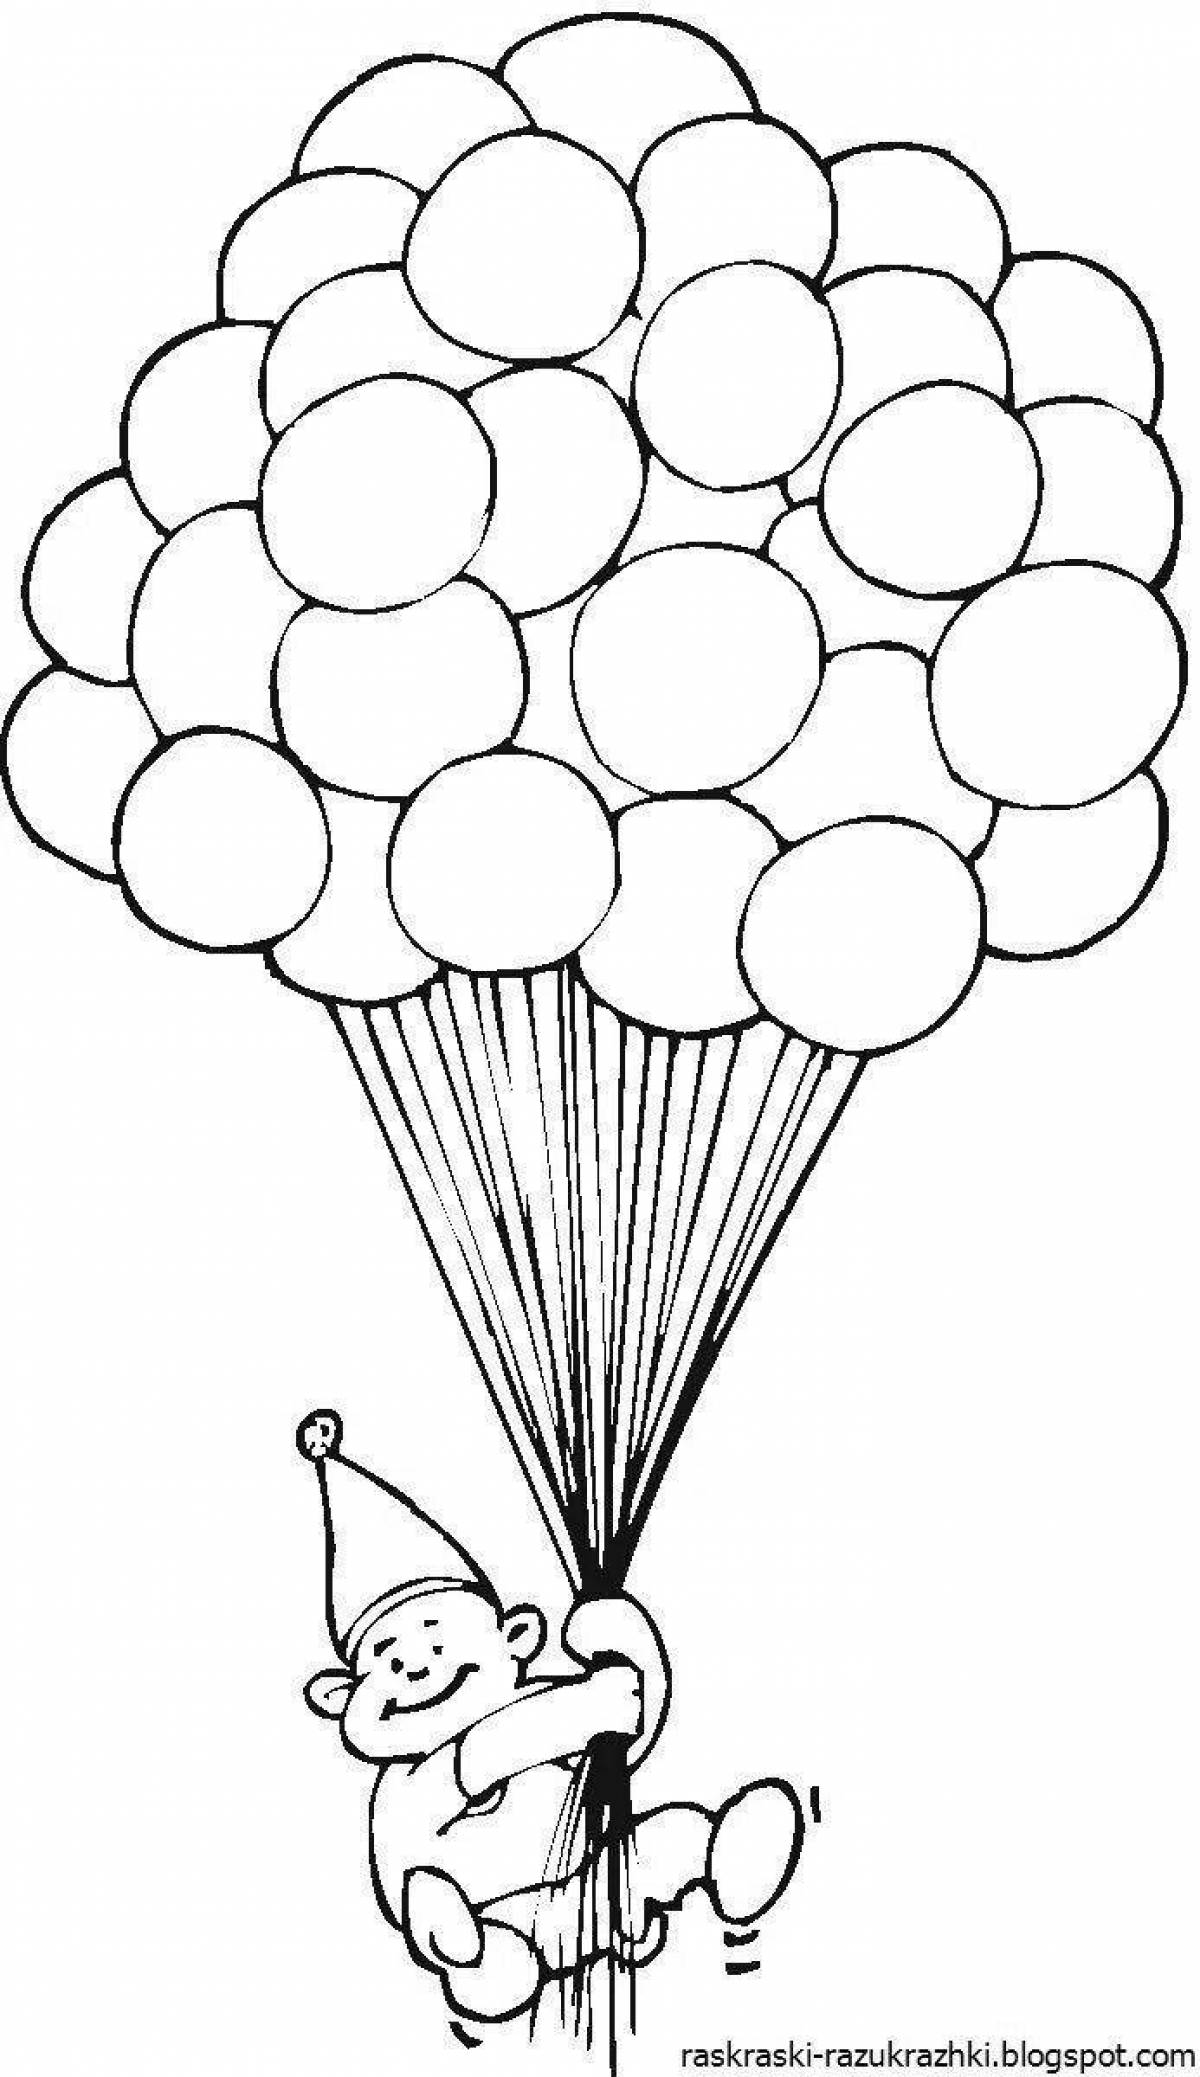 Радостная страница раскраски с воздушными шарами для детей